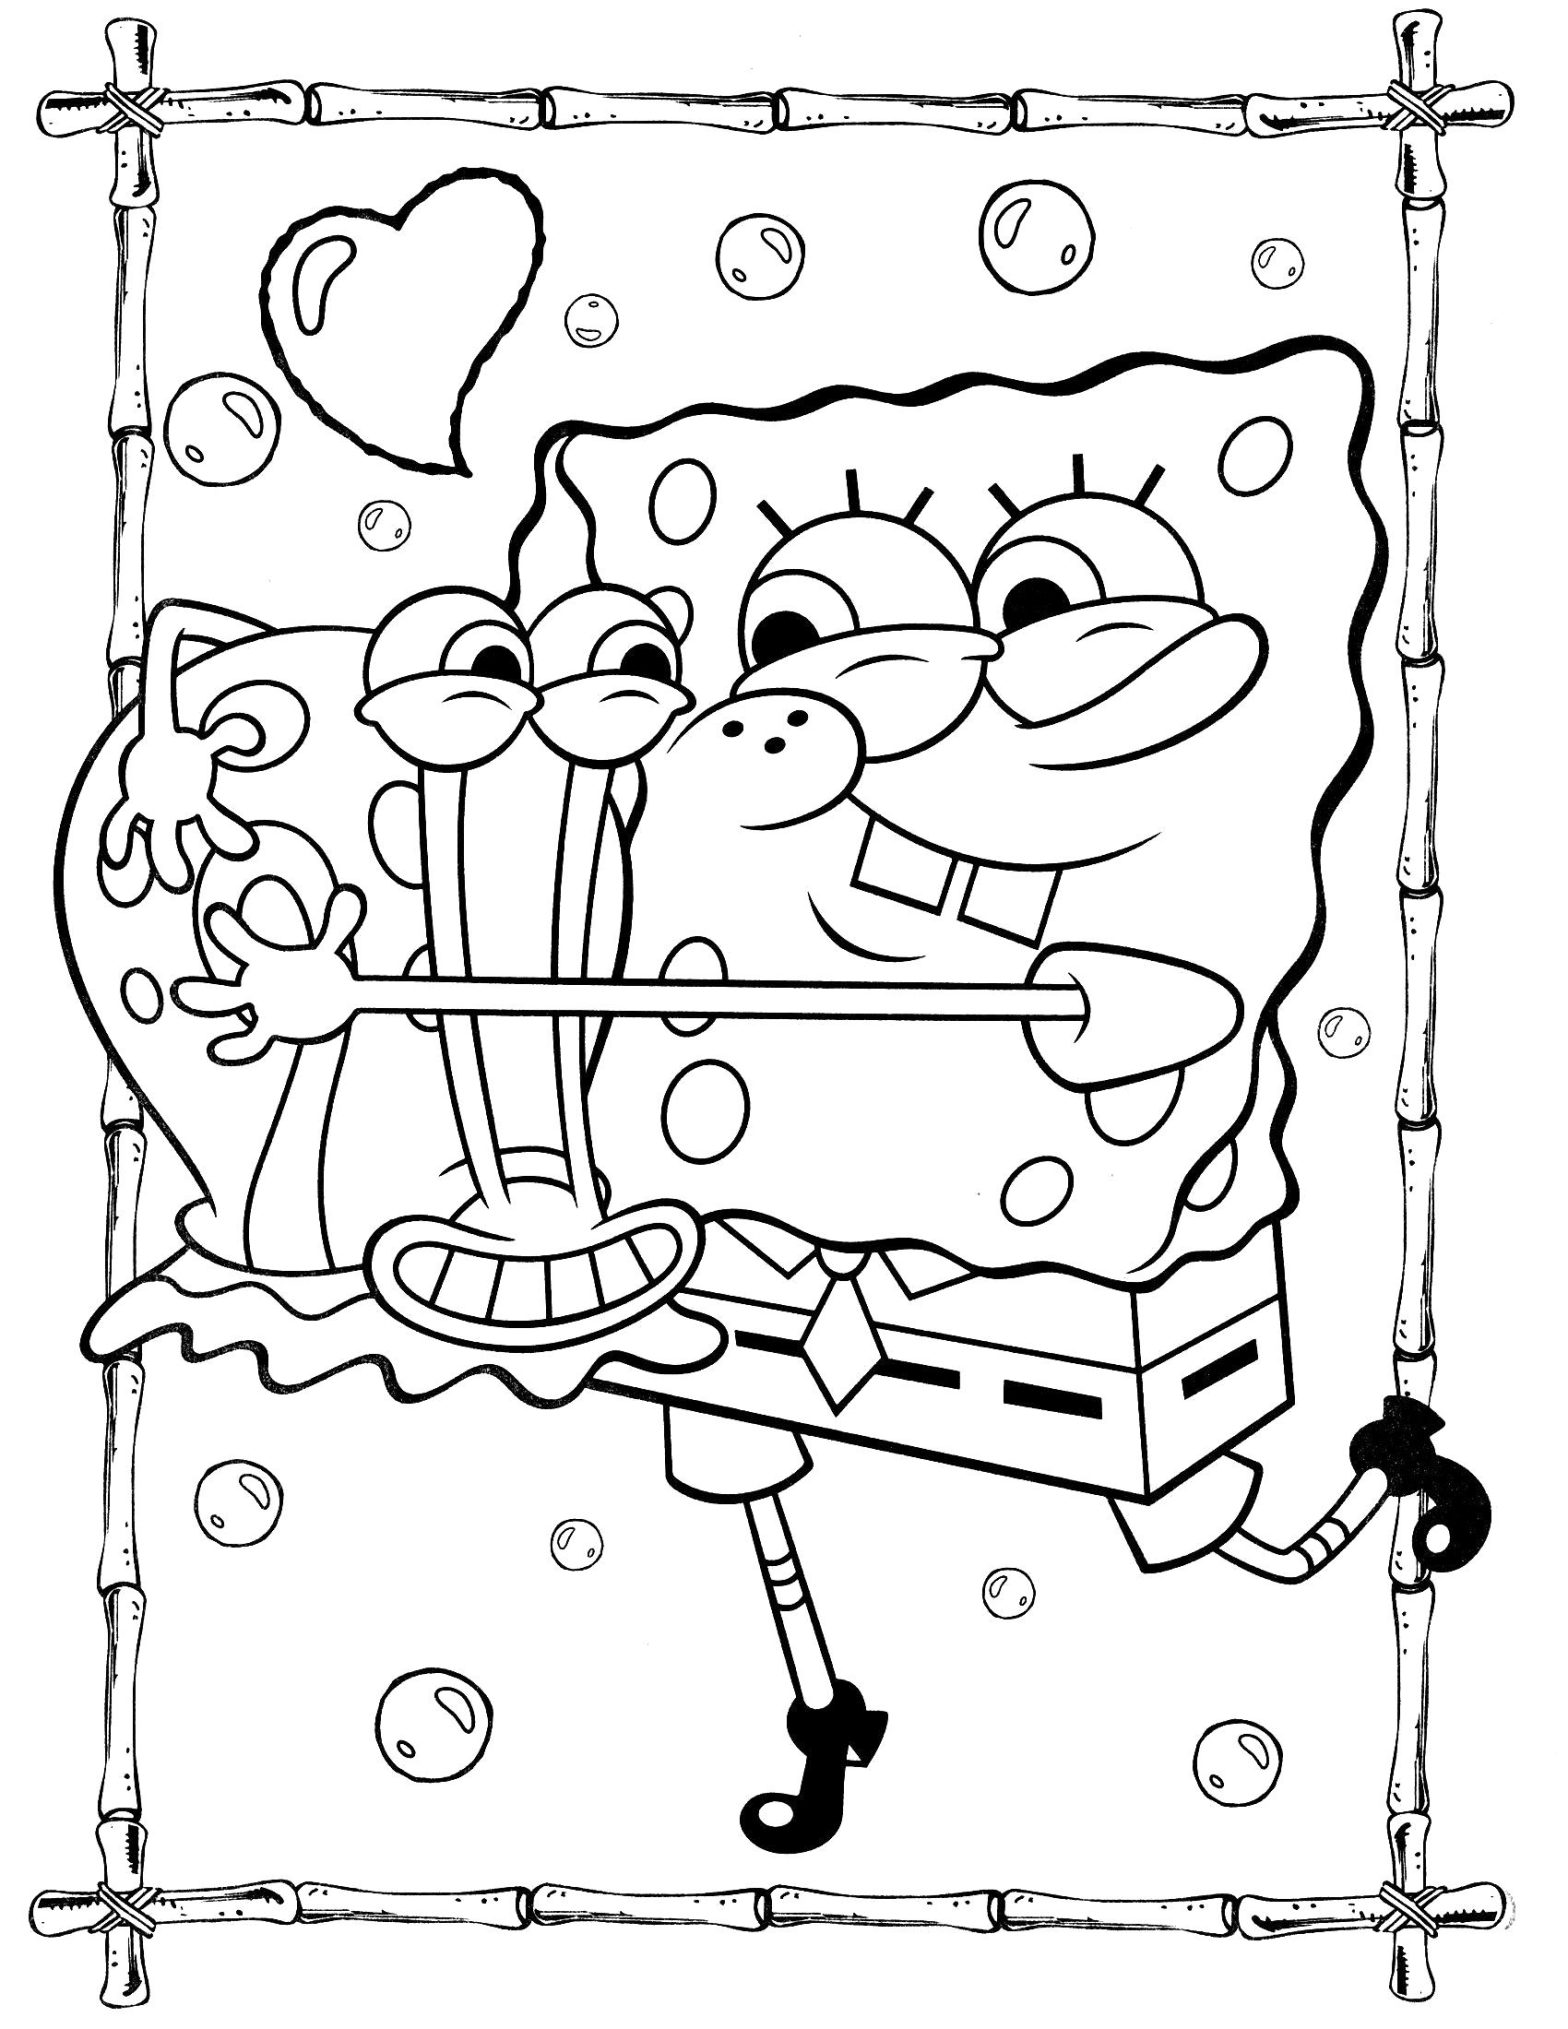 Раскраска Спанч Боб и Гэри - изображение для раскрашивания (Гэри, комиксы)